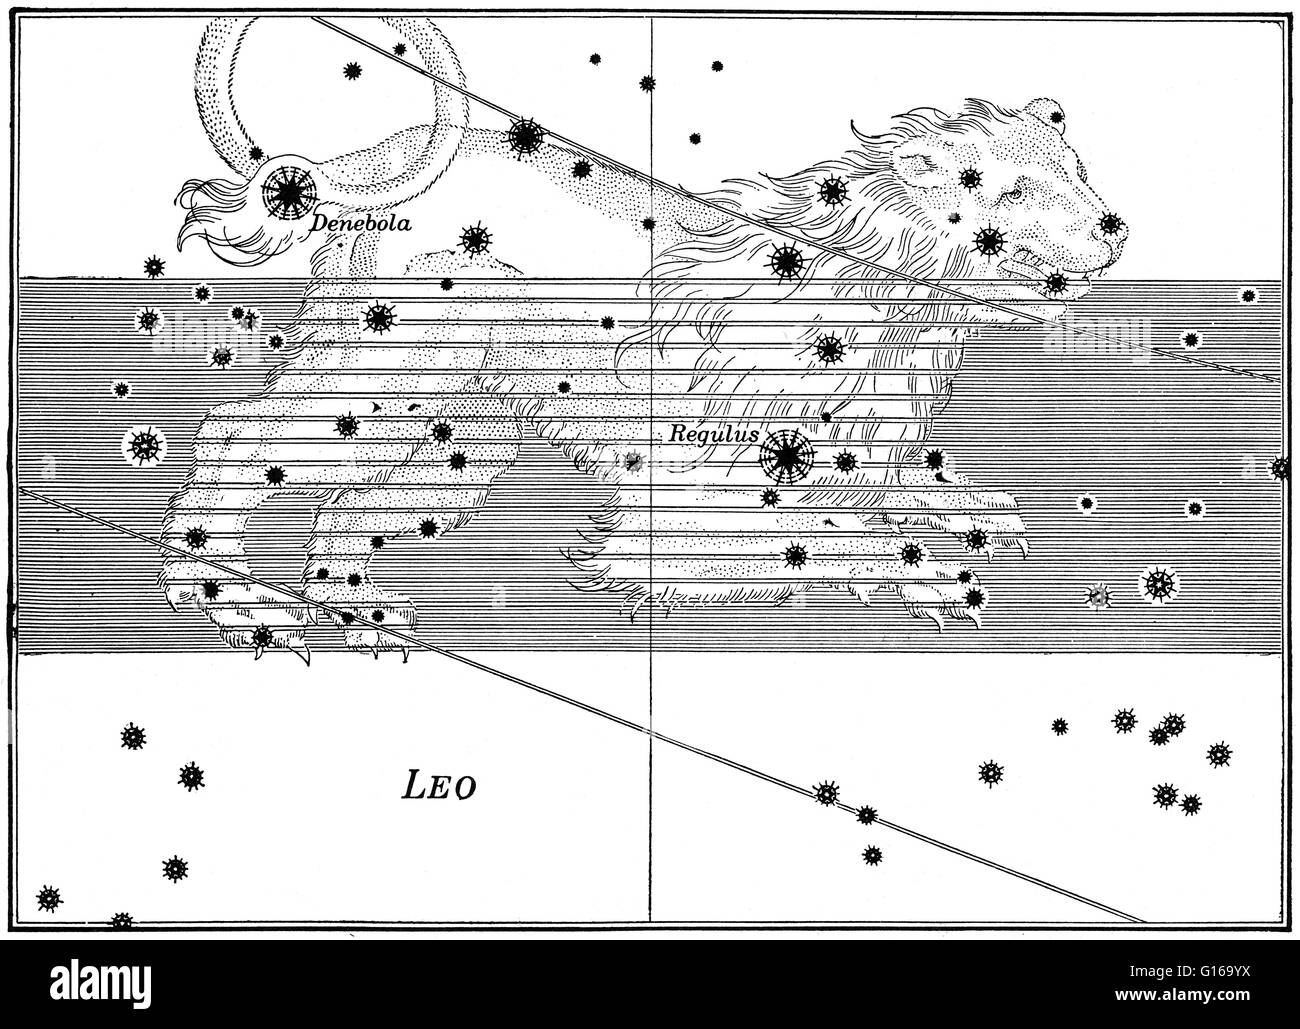 Sternbild aus Johann Bayers Sternatlas Uranometria Omnium Asterismorum, 1603. Leo ist eines der Sternbilder des Tierkreises. Sein Name ist lateinisch für Lion. Eines der 48 Sternbilder beschrieben durch das 2. Jahrhundert Astronom Ptolemäus, und es bleiben Stockfoto